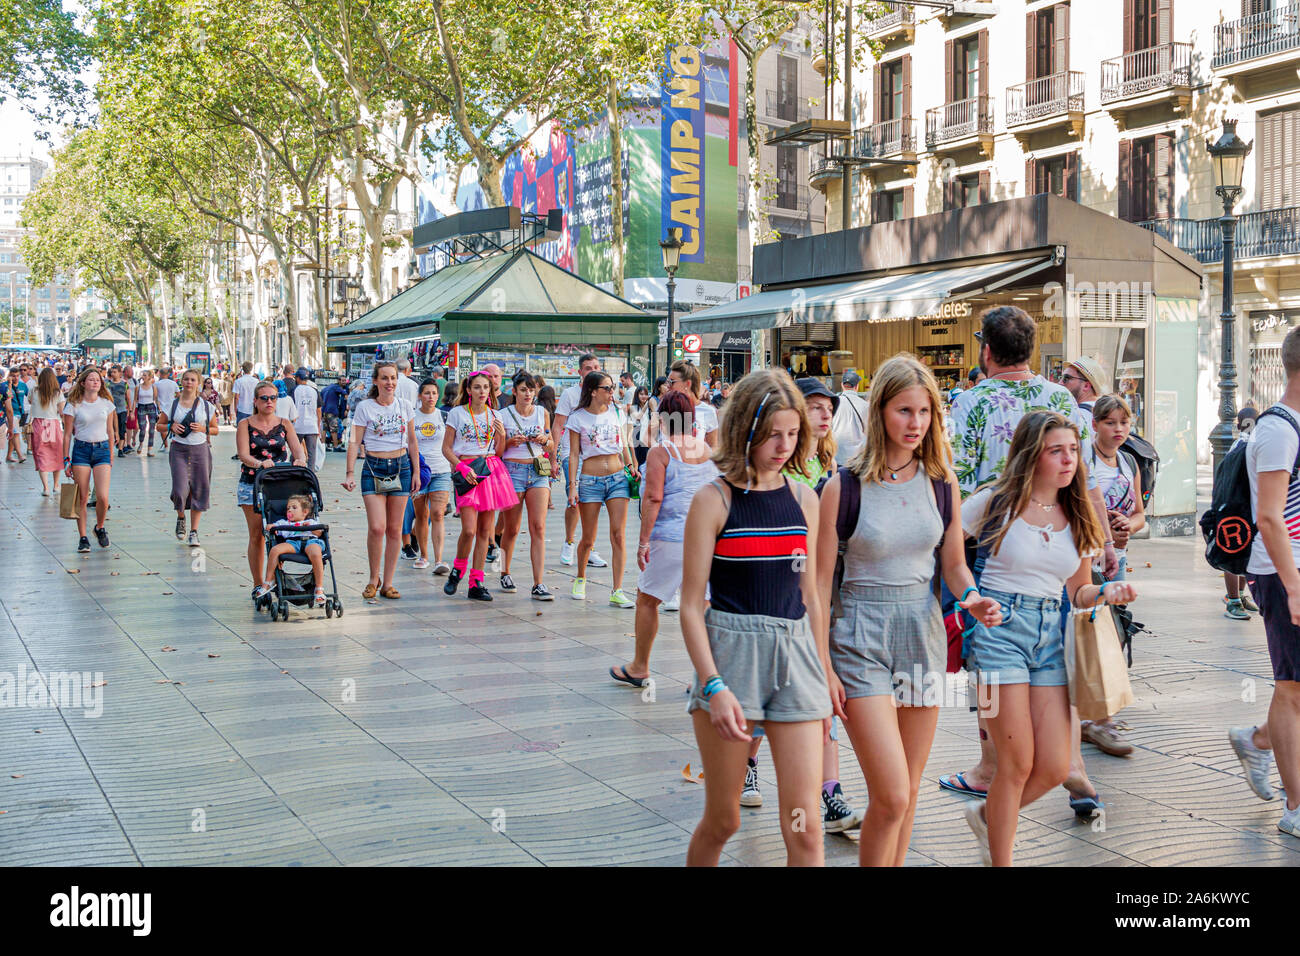 Barcelone Espagne,Catalogne Ciutat Vella,Barri Gotic,la Rambla,promenade piétonne bordée d'arbres,filles,adolescents,étudiants,amis,surpeuplés,hispaniques,ES19 Banque D'Images